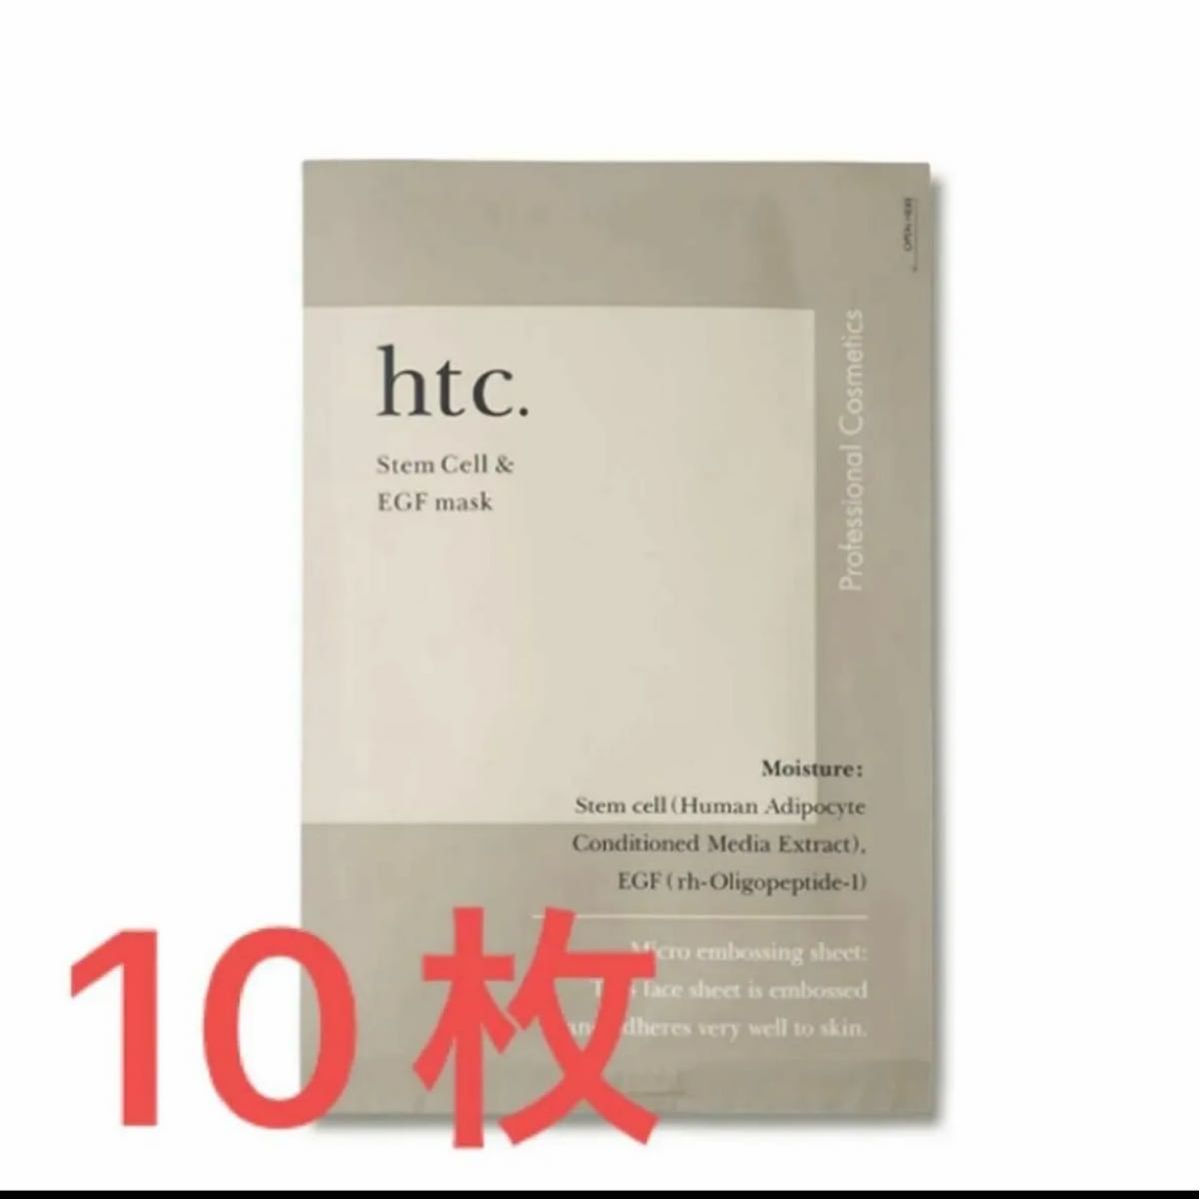 htc. ヒト幹細胞マスク 10枚  ナチュラルショップ htcパック